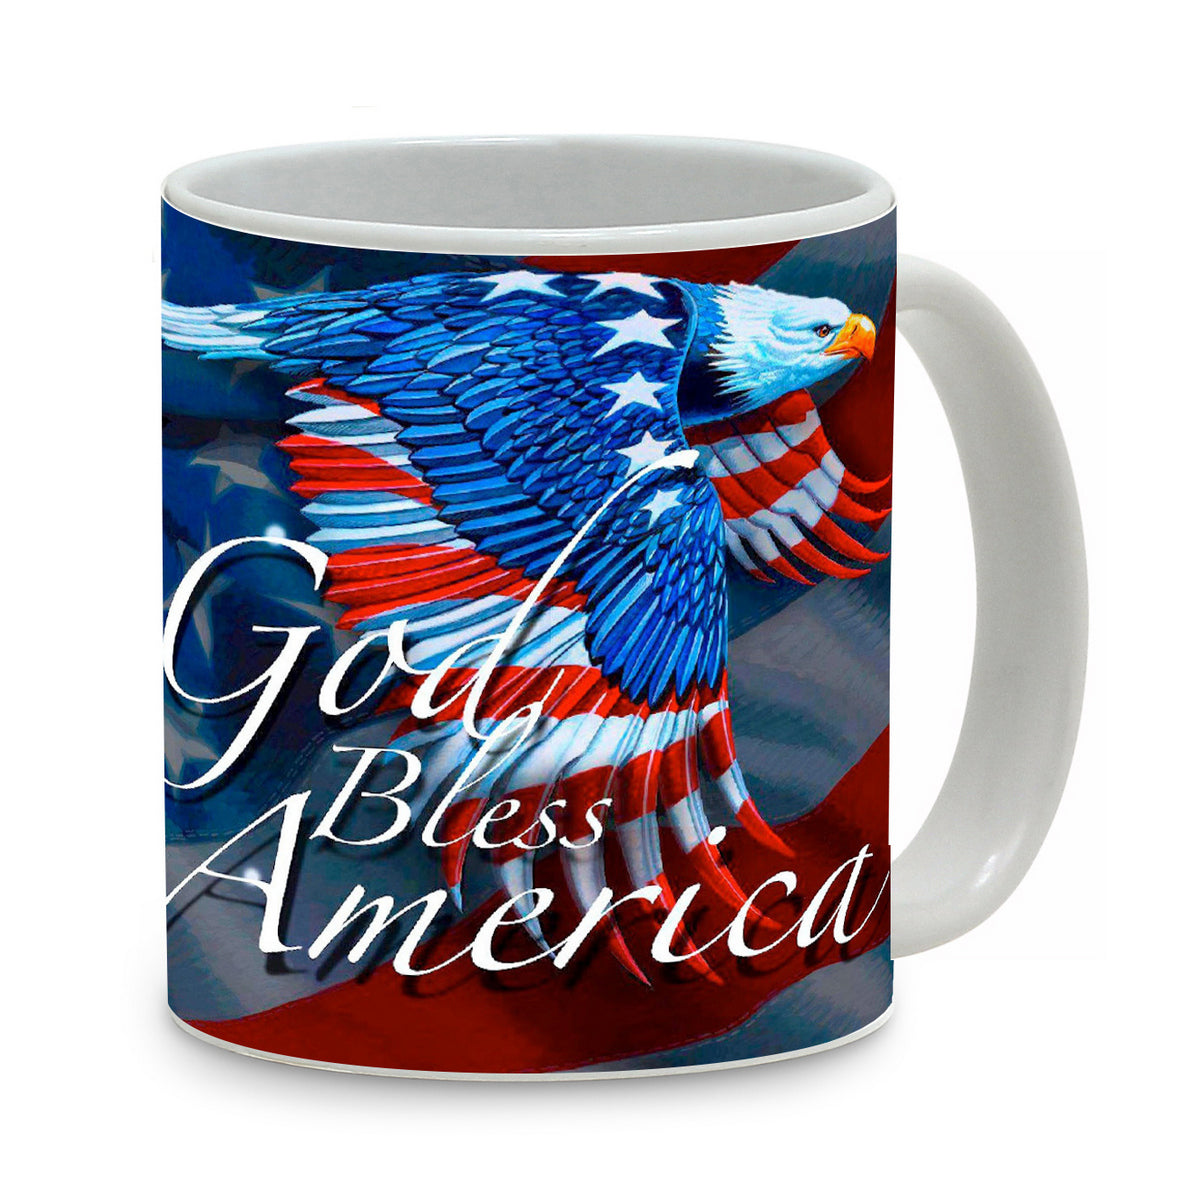 SUBLIMART: Patriotic Mug 'God Bless America' (Design 62)